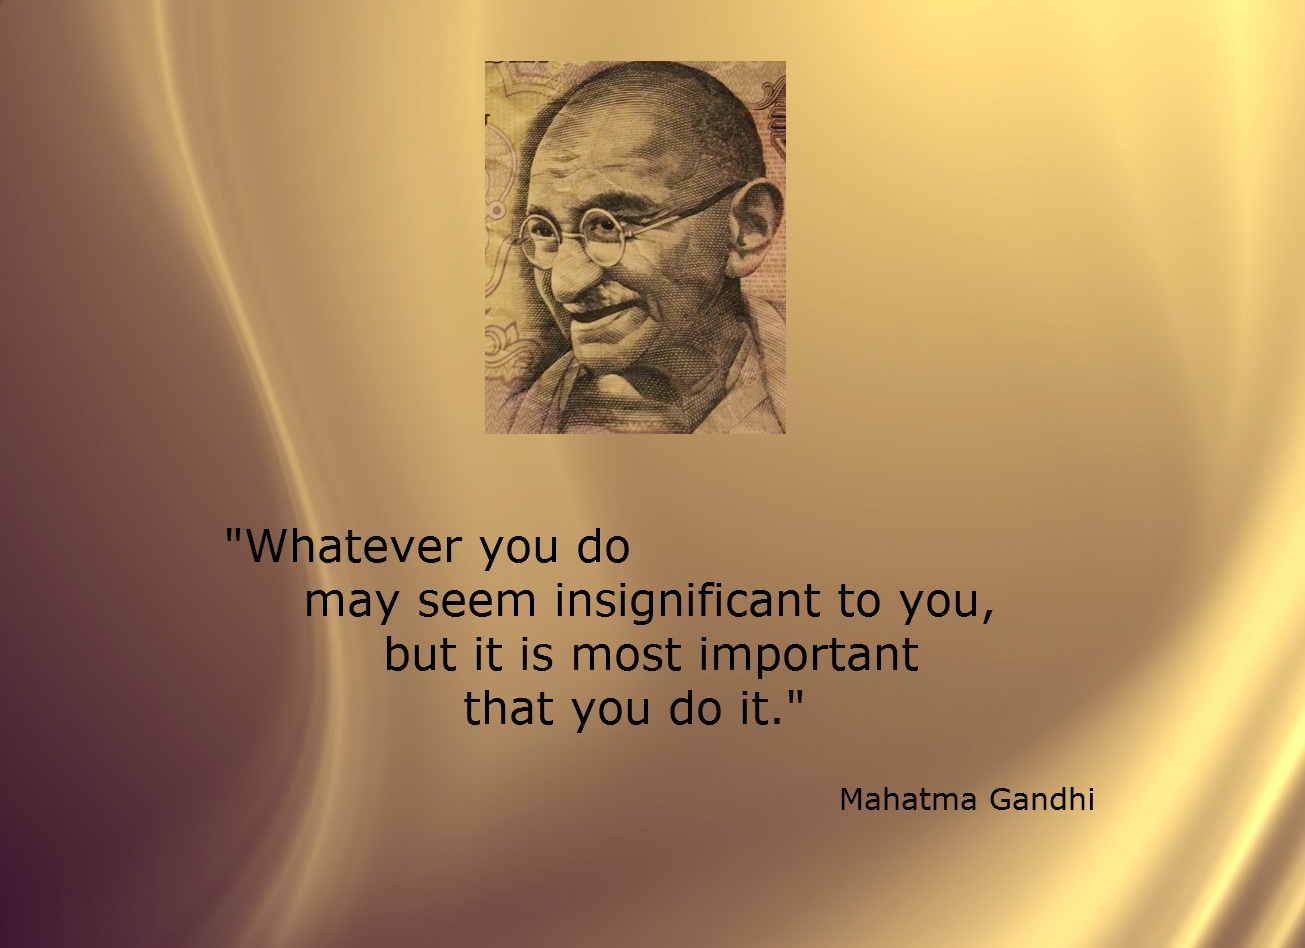 Gandhi insignificant